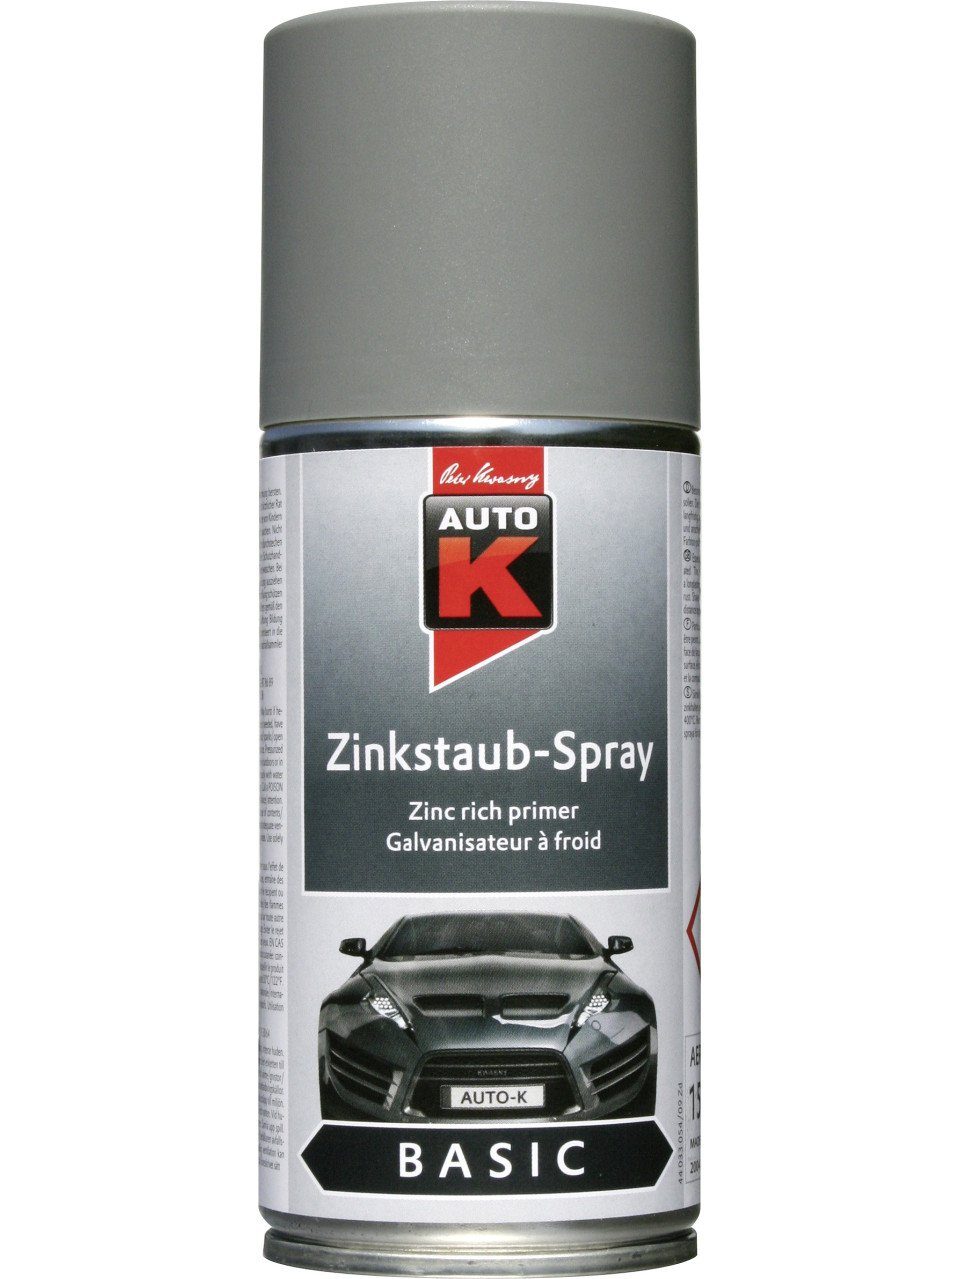 Auto-K 150ml Auto-K Basic Zinkstaubspray Schmierfett grau